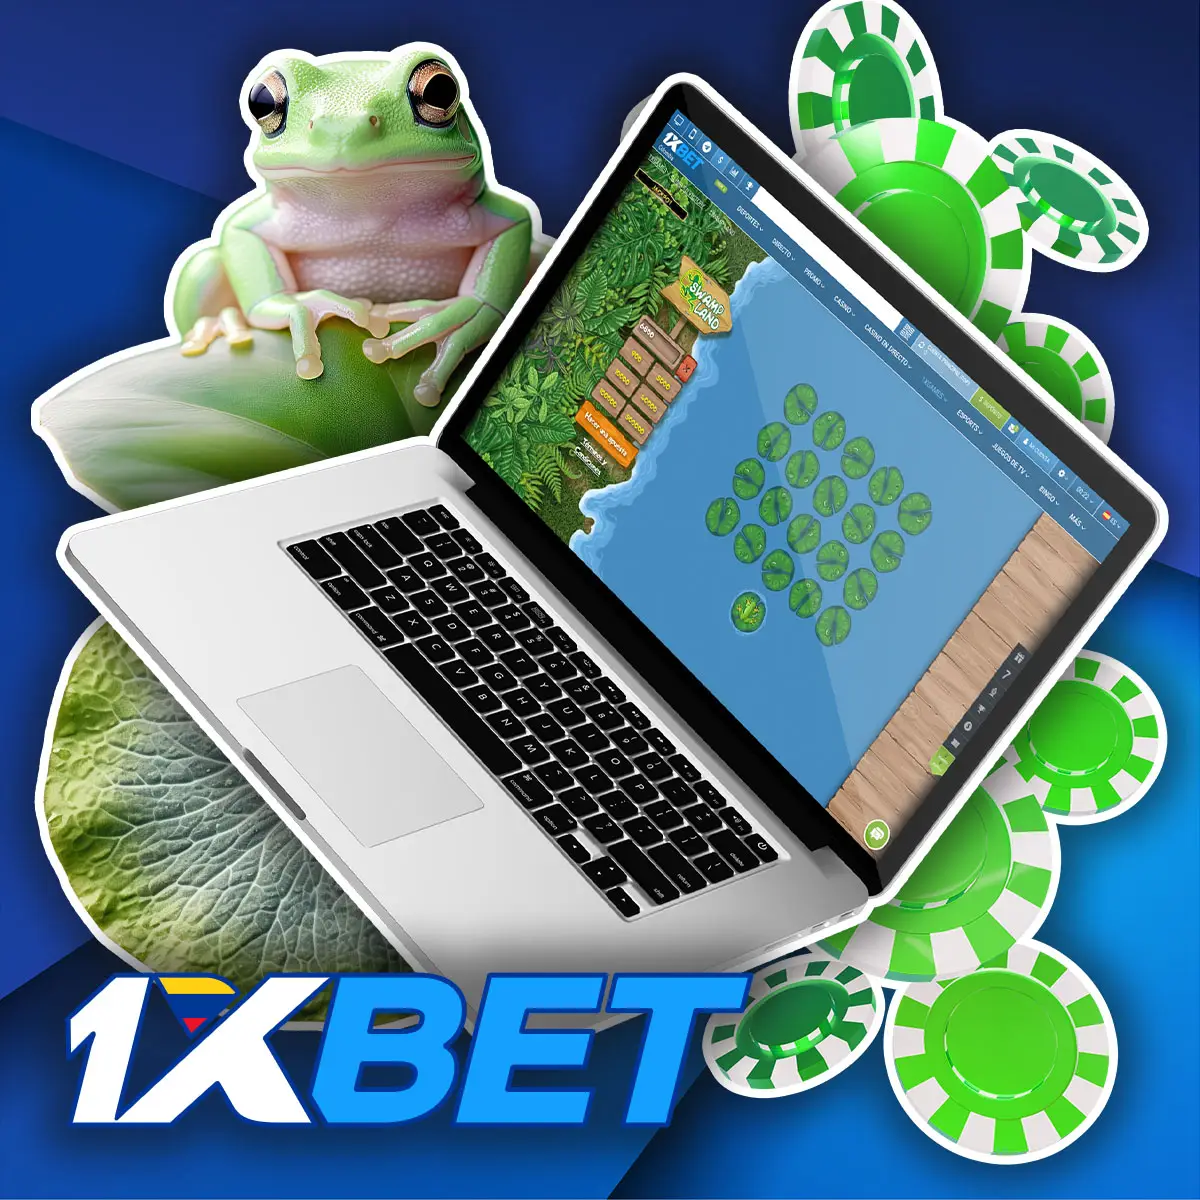 Revisión del popular juego de apuestas Frog en 1xBet